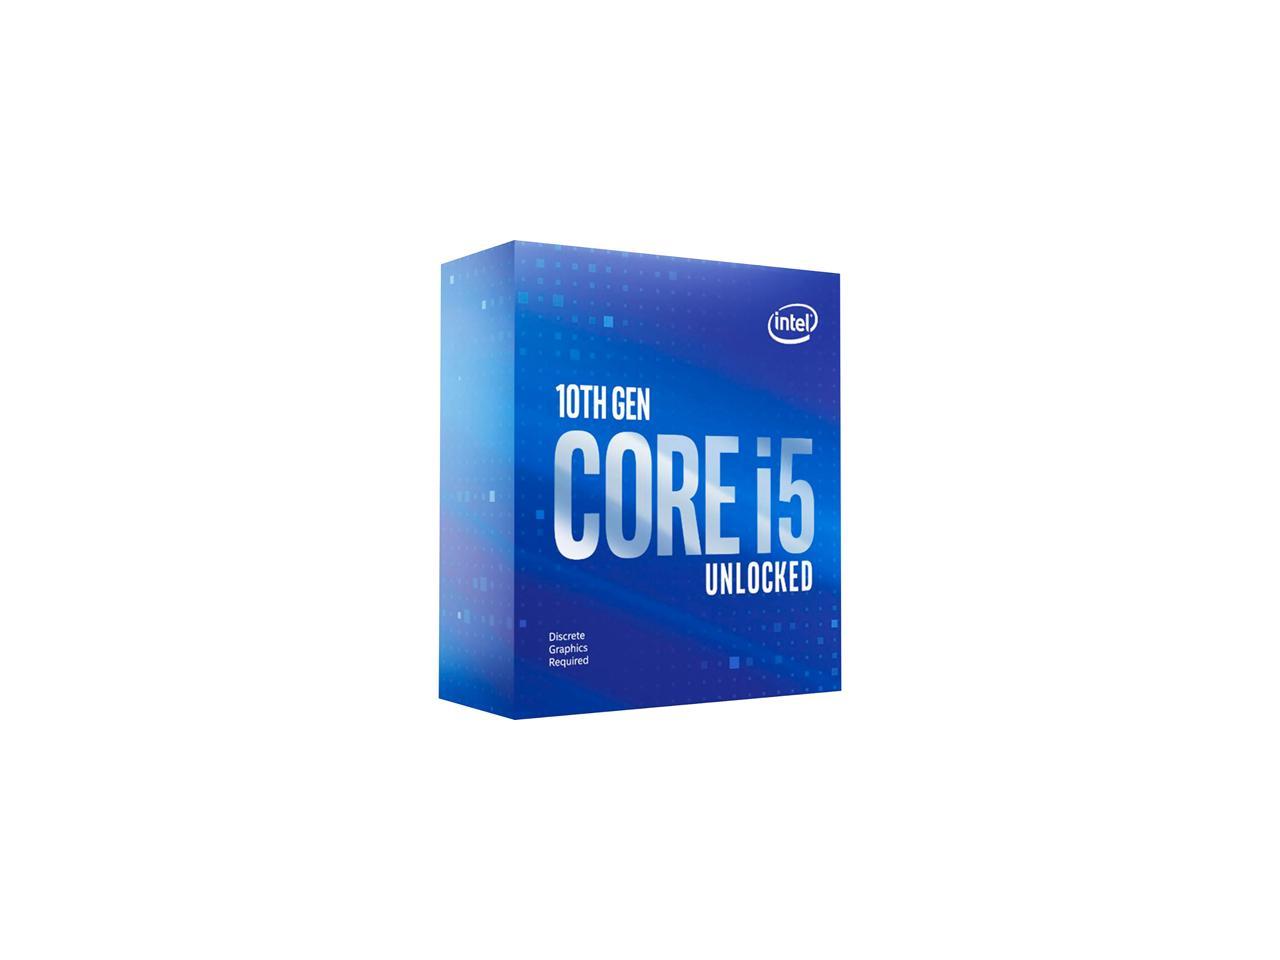 Brood Uitgestorven Bevatten Intel Core i5-10600KF - Core i5 10th Gen Comet Lake 6-Core 4.1 GHz LGA 1200